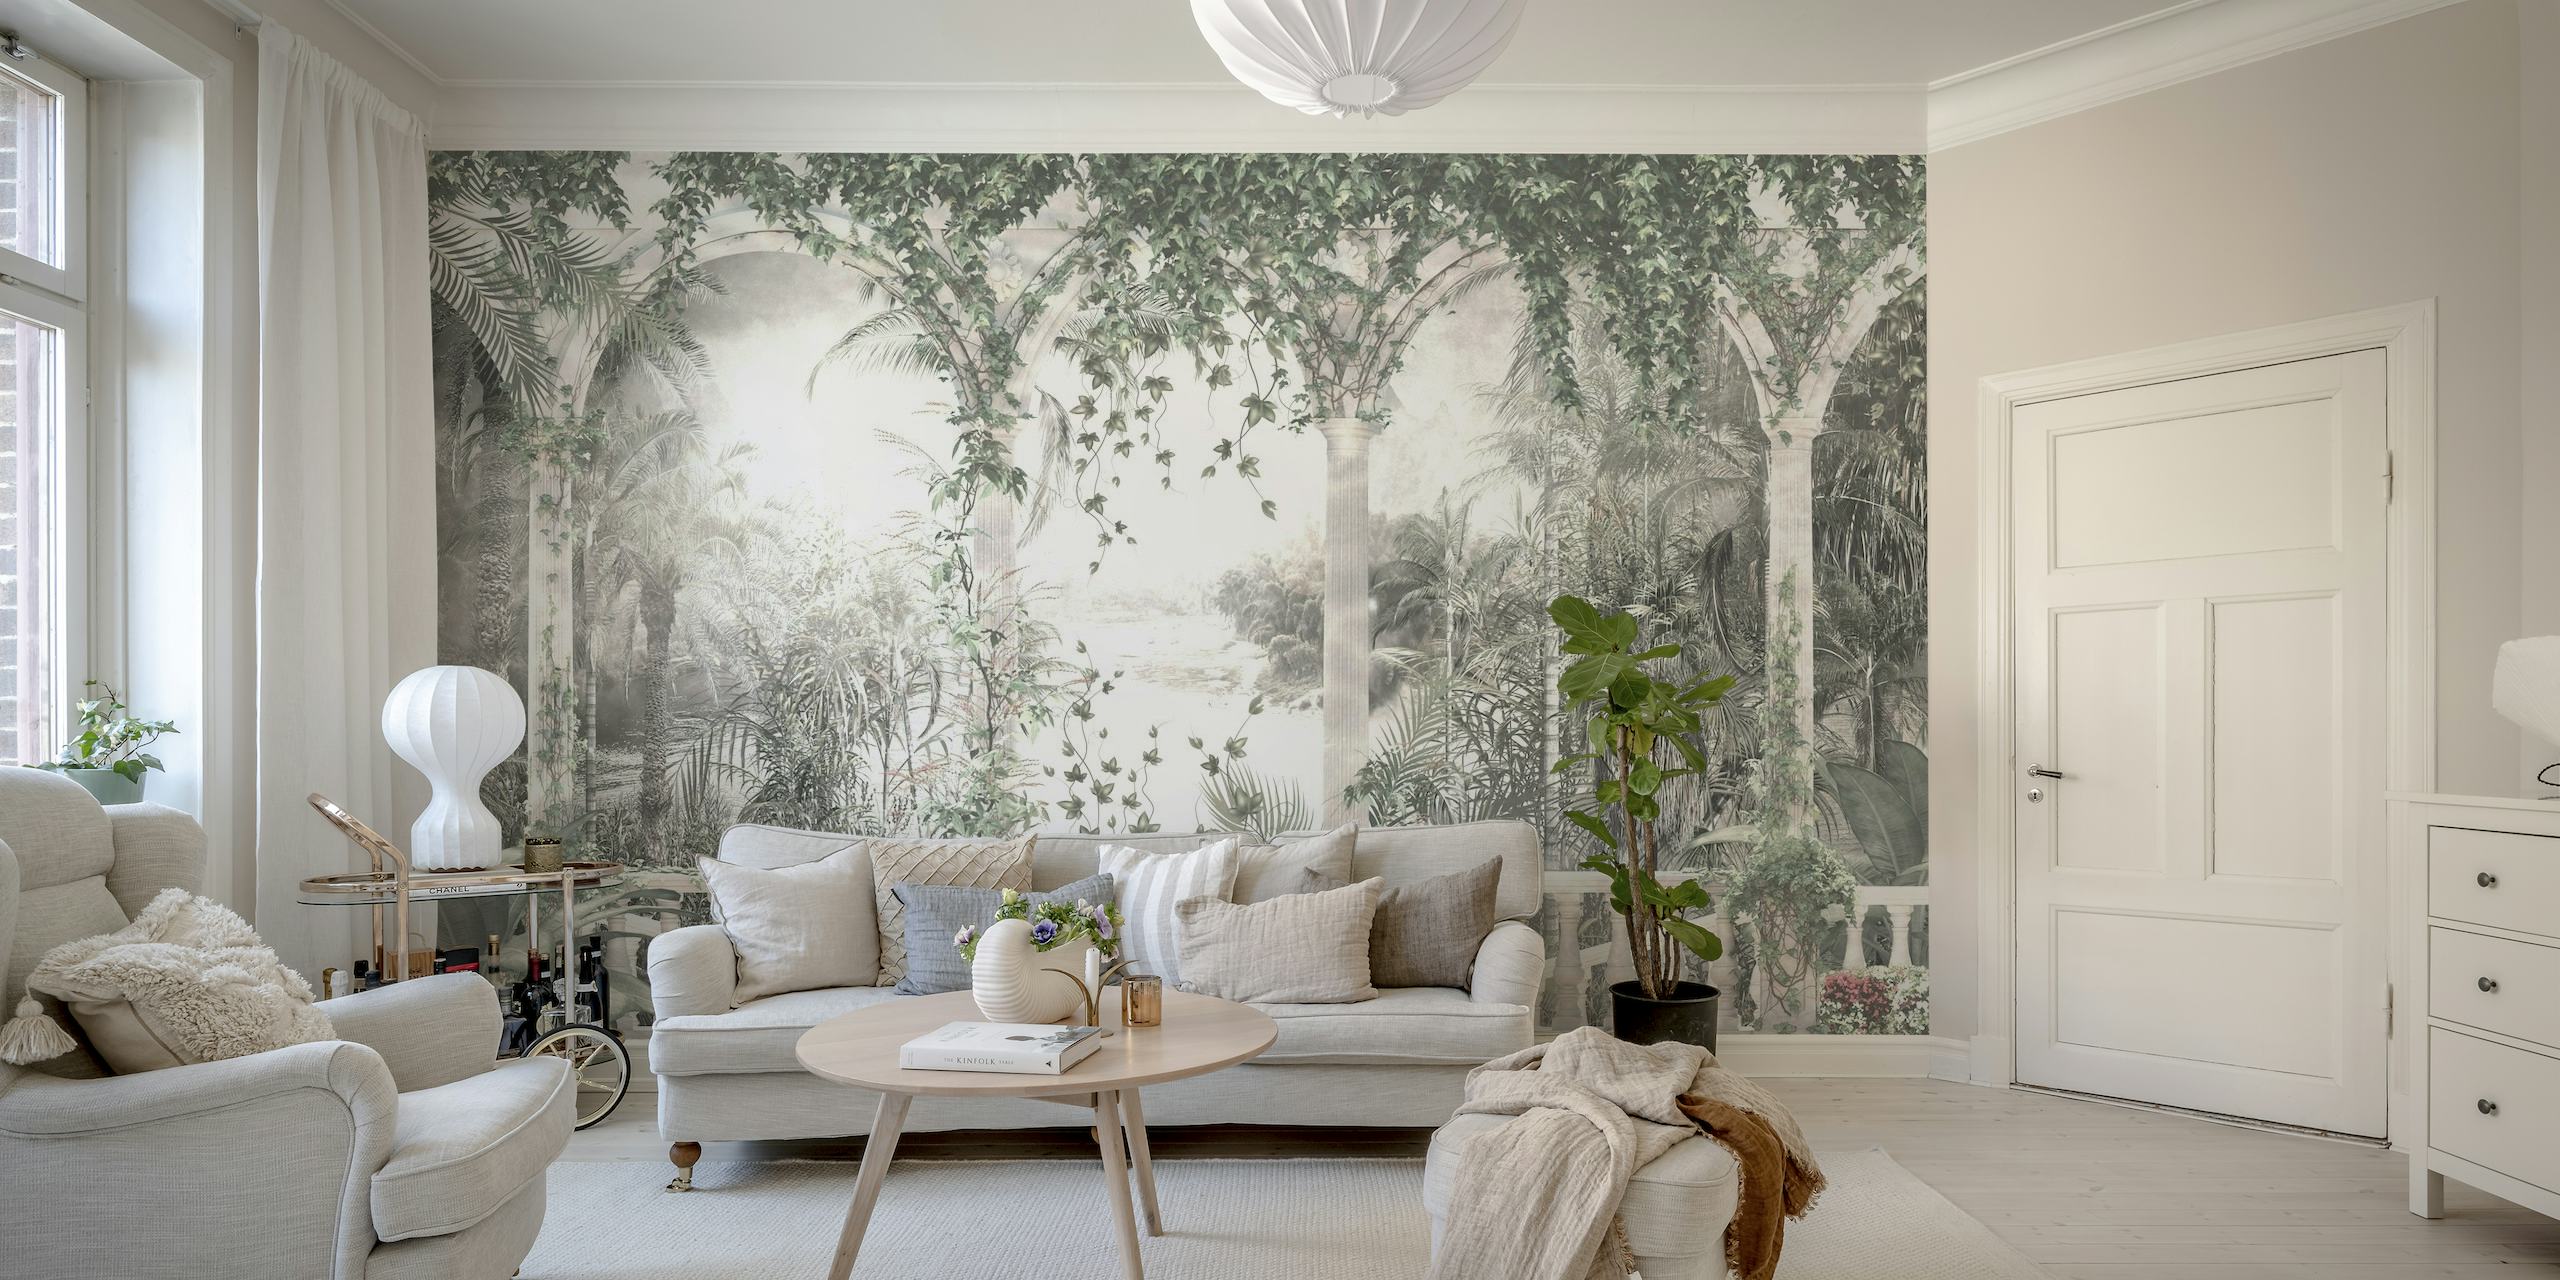 Vægmaleri med tropisk udsigt med buede træer og et fredfyldt landskab